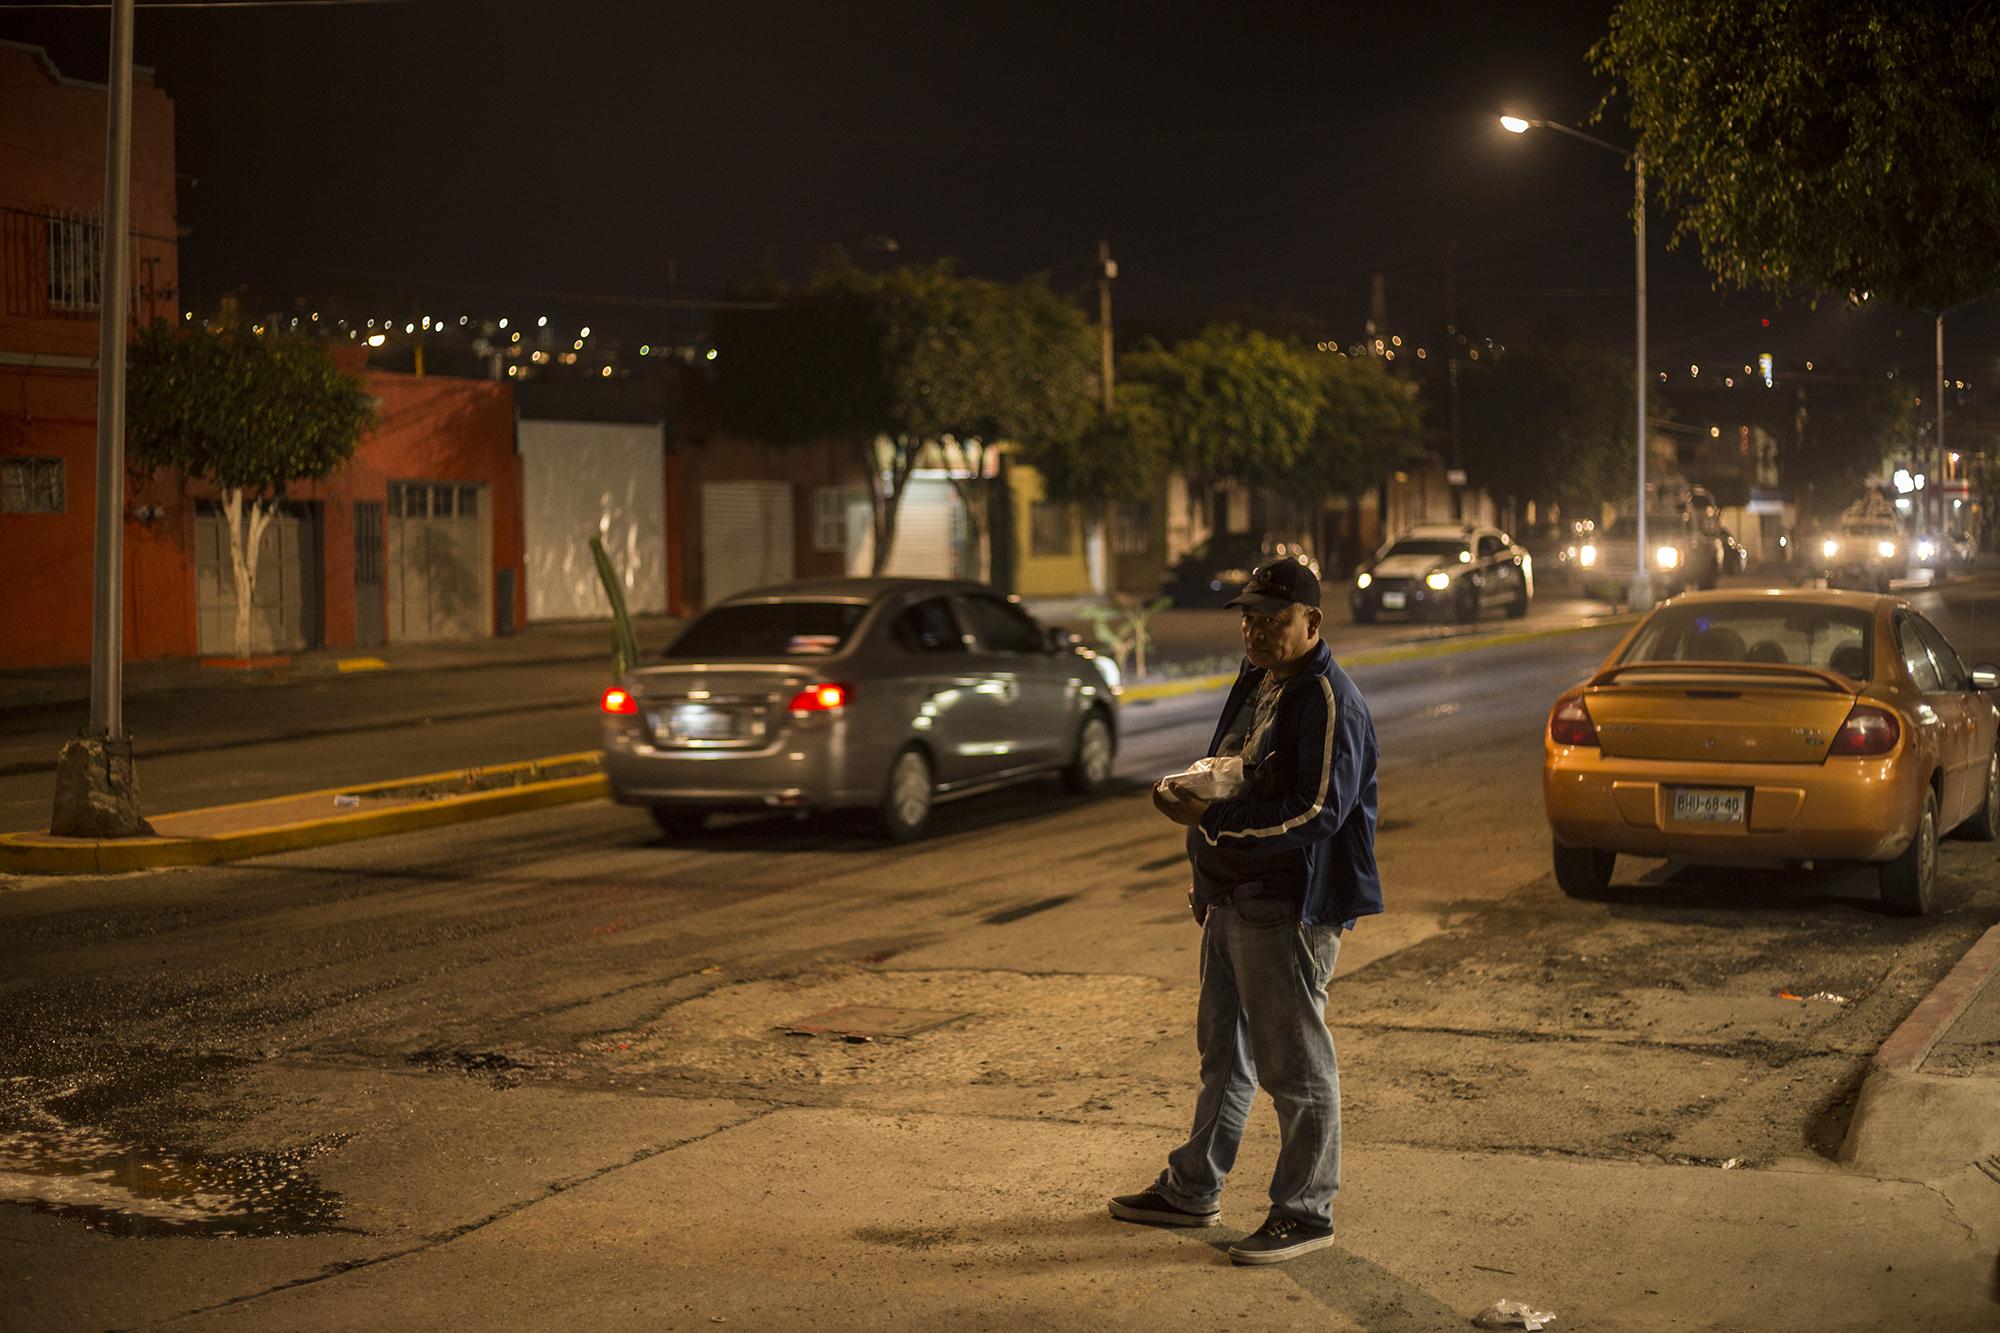 El hondureño Carlos Cabrera espera un taxi, en la Avenida 5 de mayo y calle Coahuila, en la zona norte de Tijuana. Son las 7:00 PM. Viaja del trabajo a su casa en un taxi compartido, que cobra 12 pesos por persona. Los habitantes de Tijuana aseguran que caminar por la noche en esa zona suele ser de mucho riesgo.